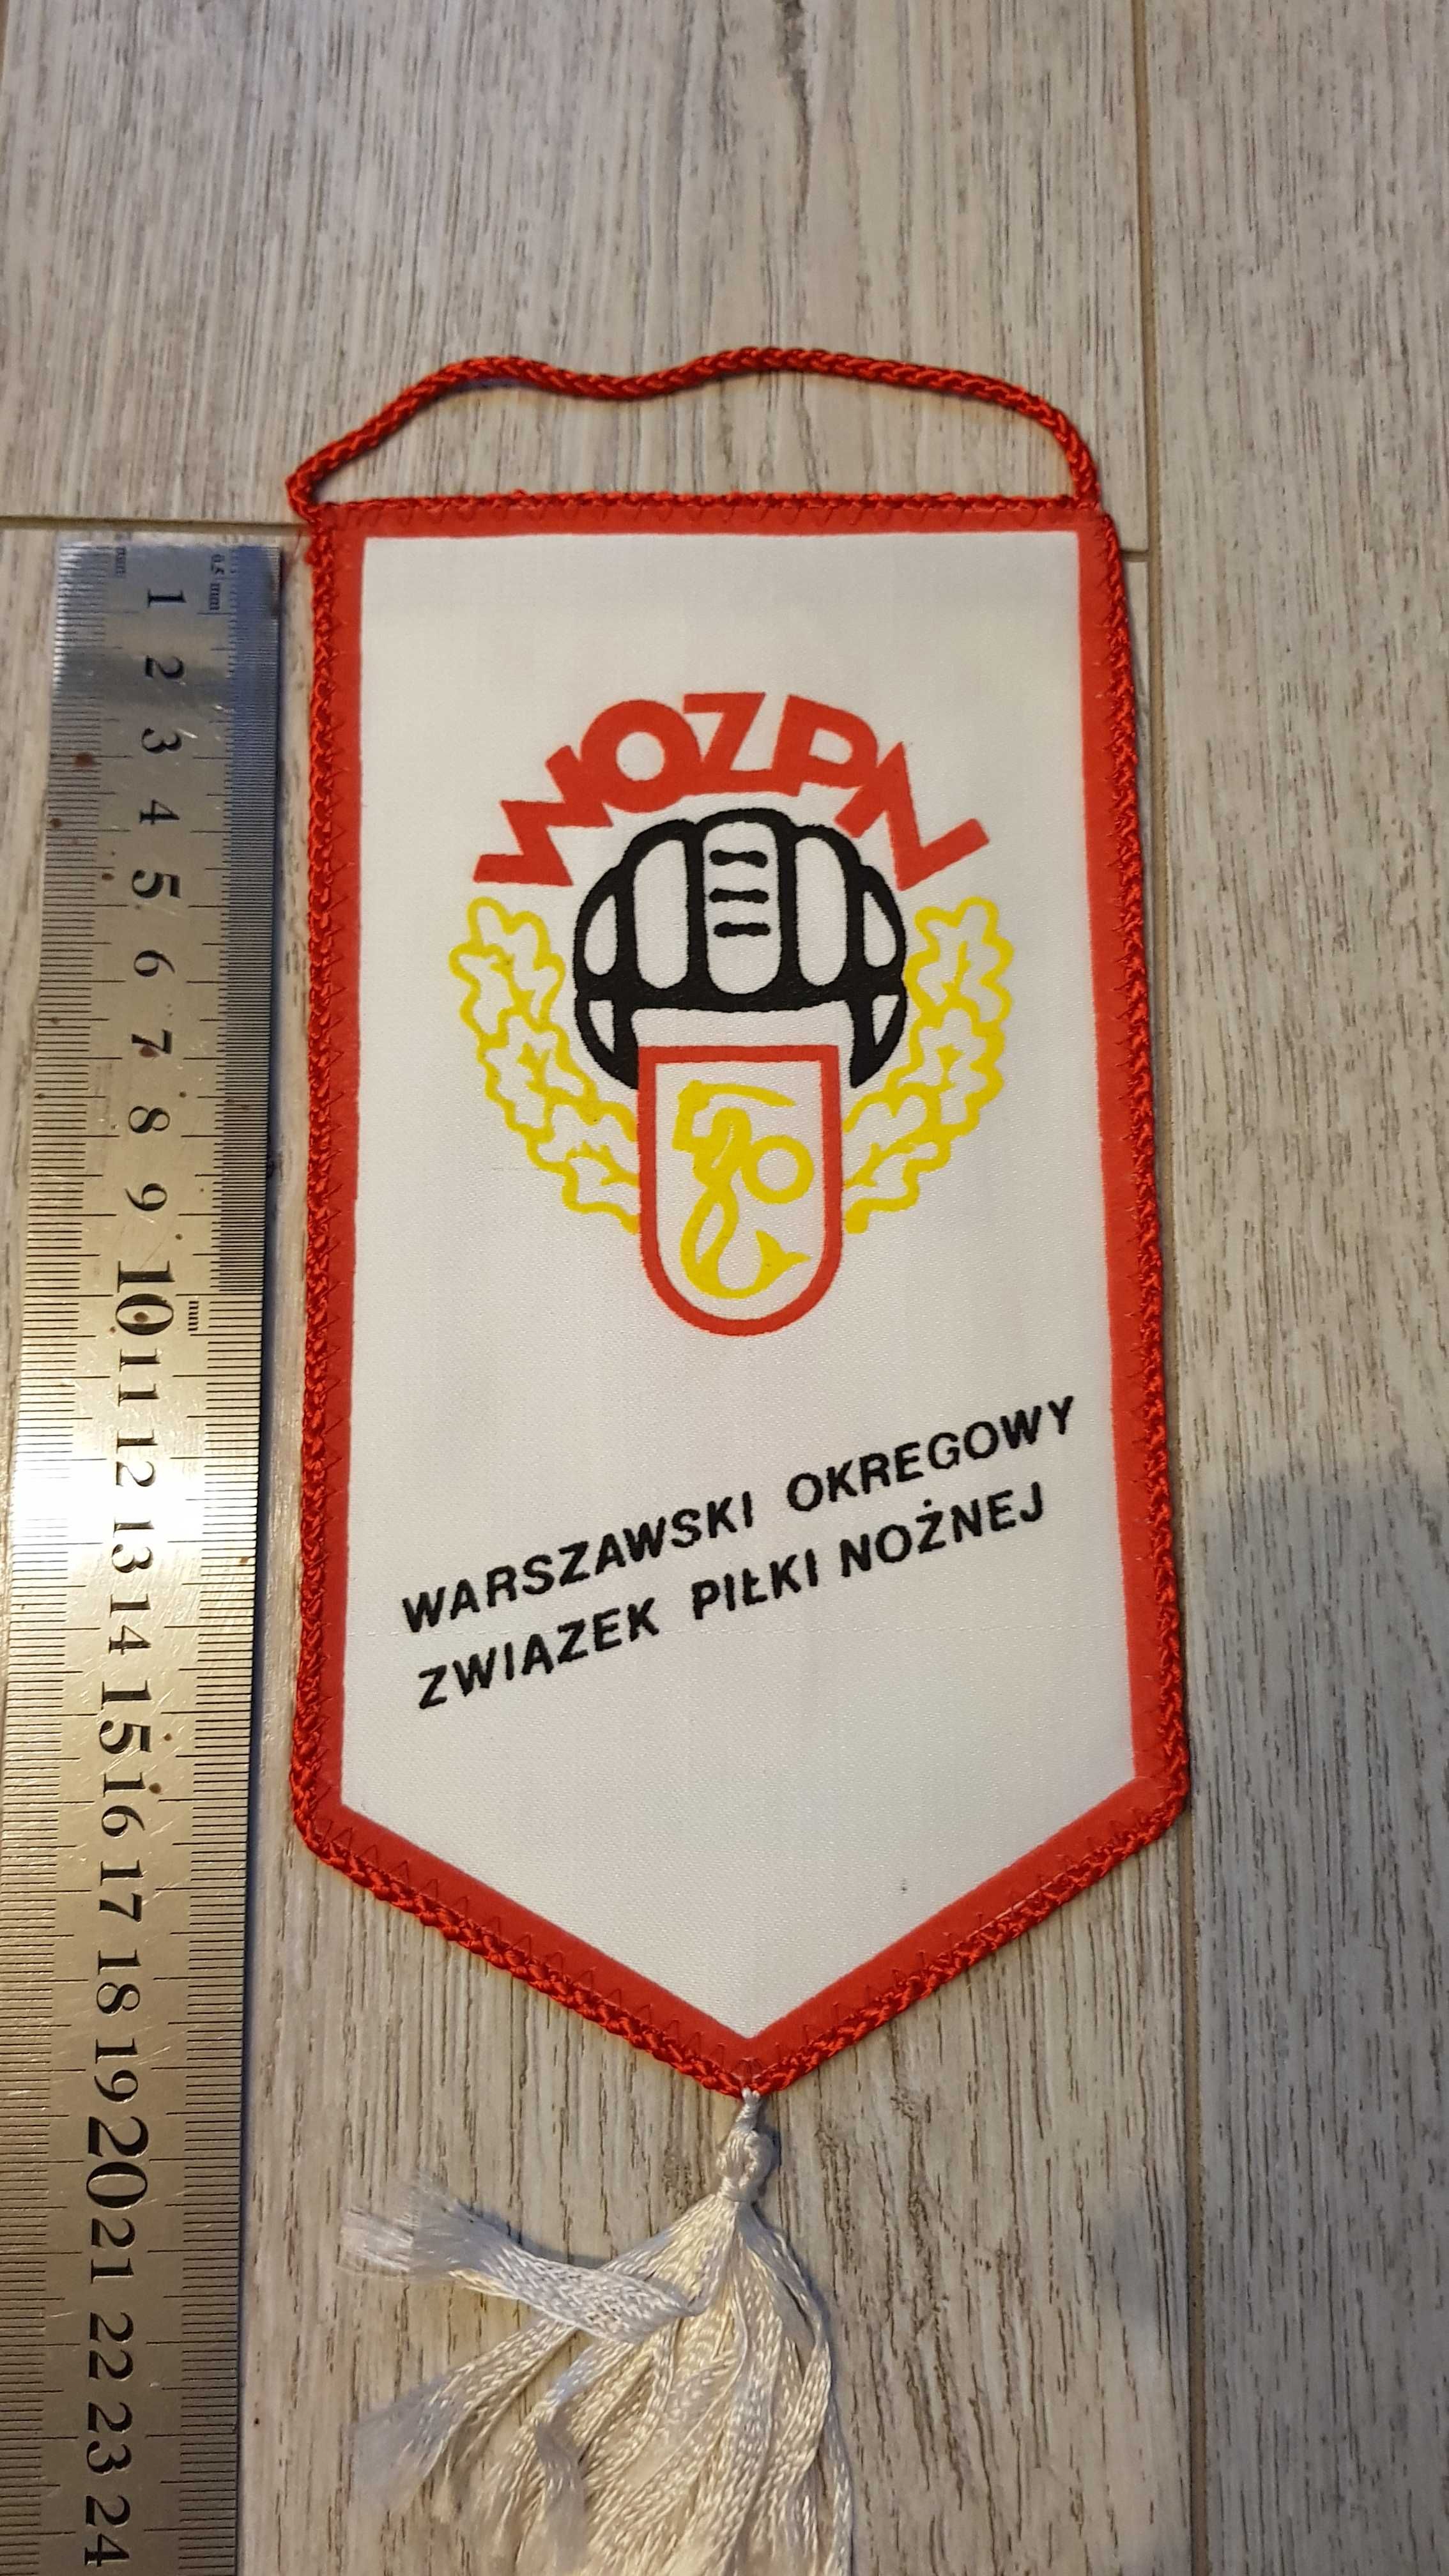 Proporczyk Warszawski okręgowy związek piłki nożnej Warszawa